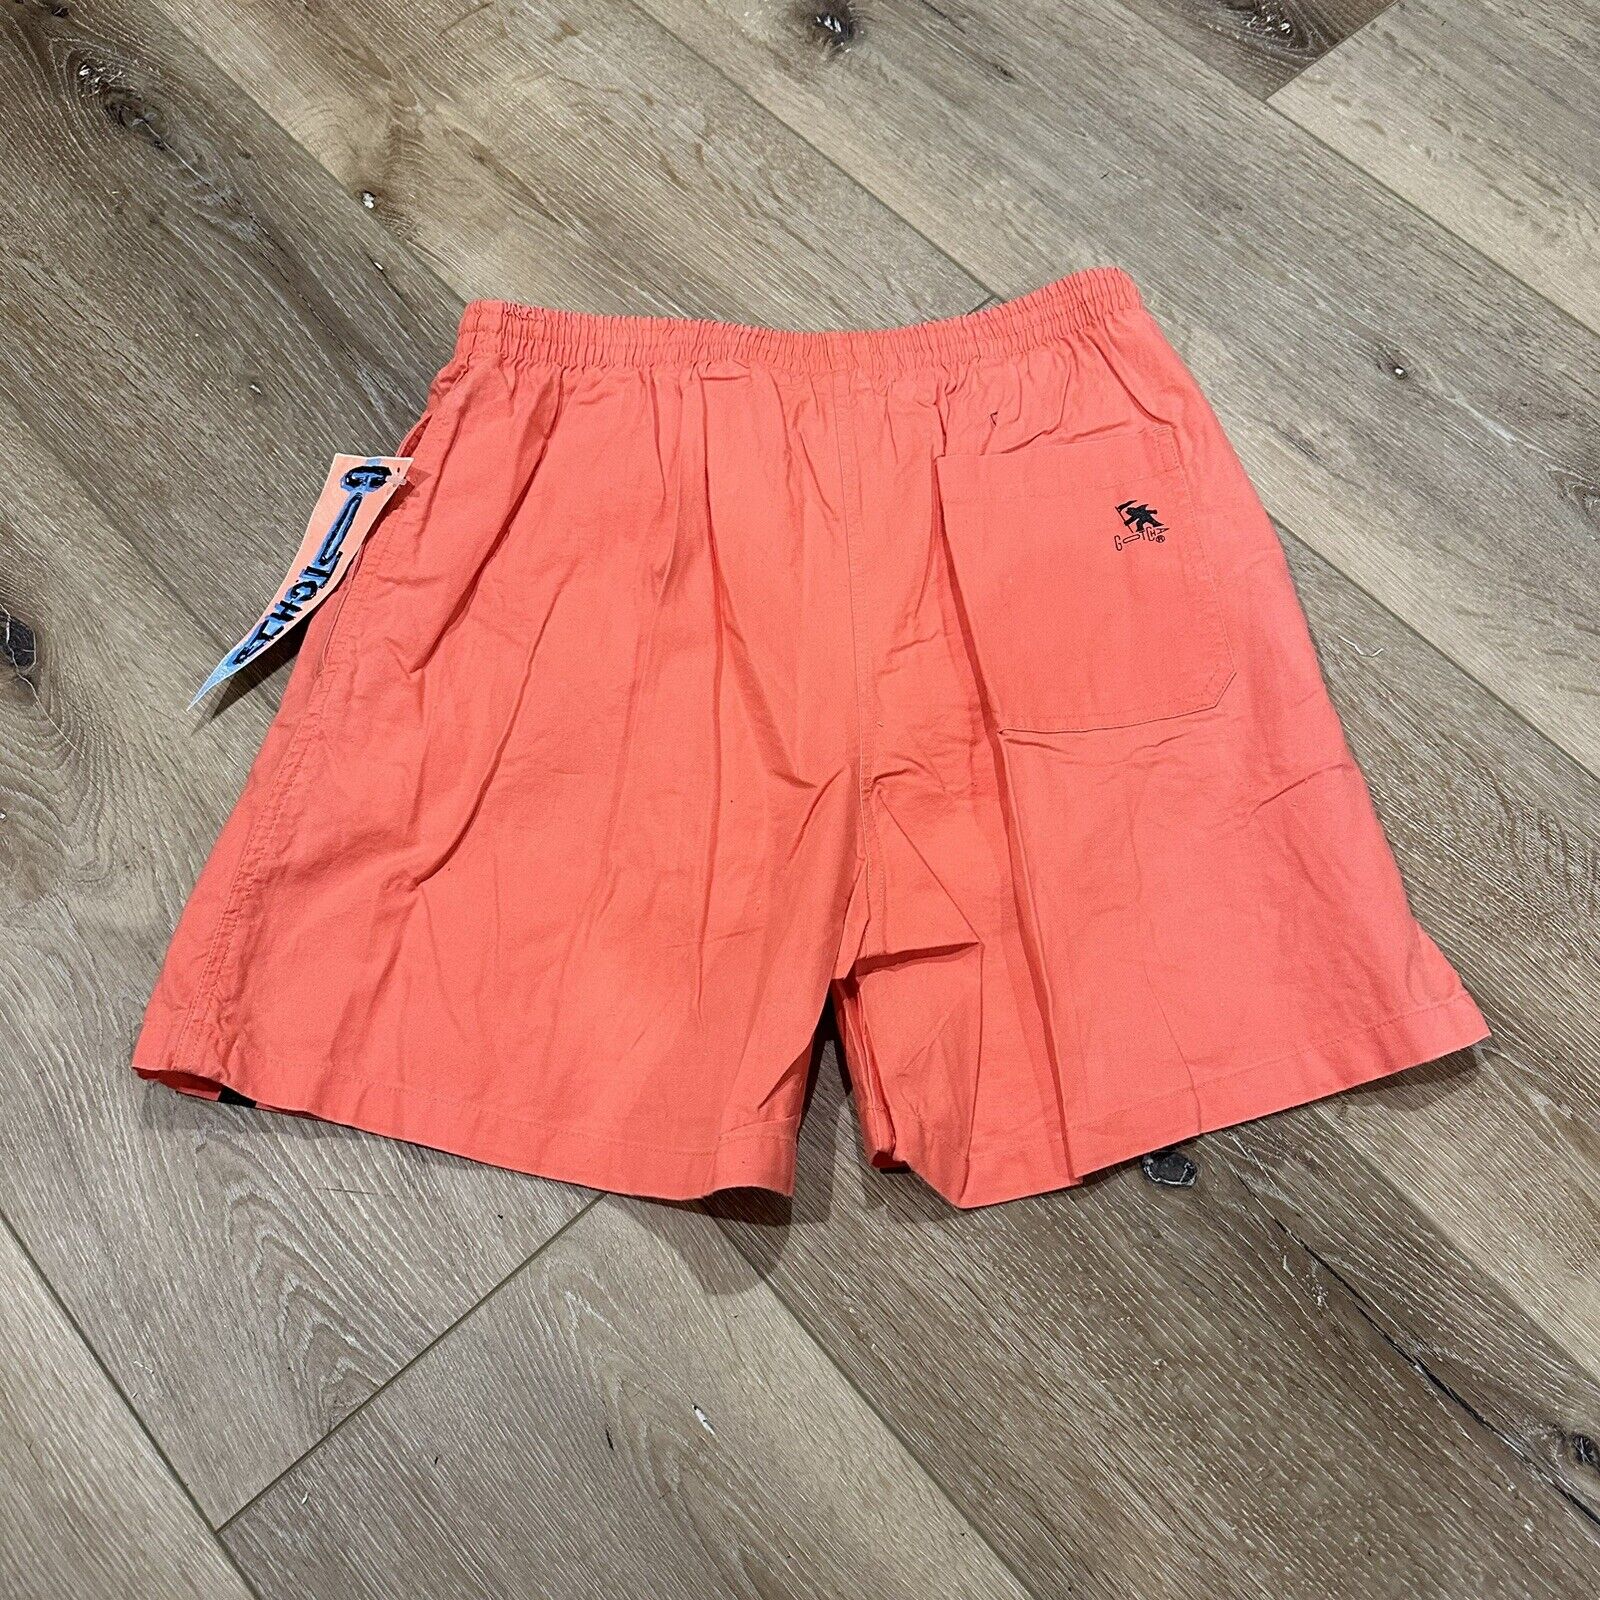 Gotcha Men's Shorts Spellout Logo Size 34 Cotton … - image 2